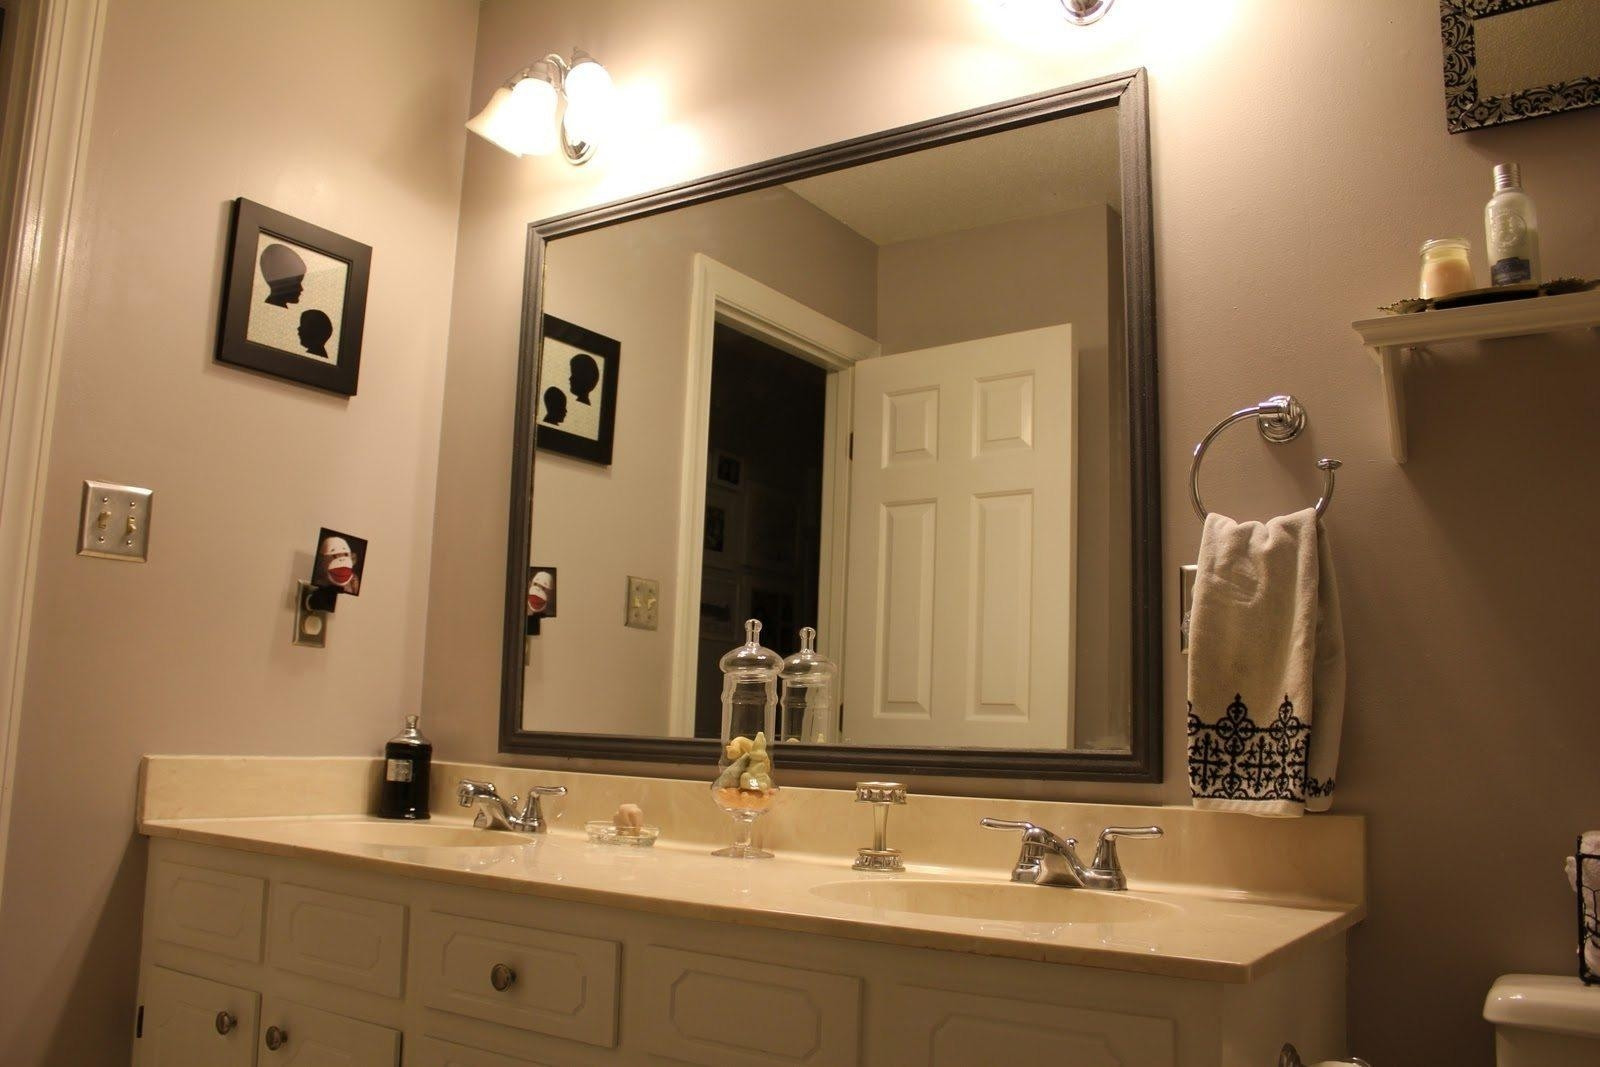 Frameless Beveled Bathroom Mirror
 20 Frameless Beveled Bathroom Mirrors